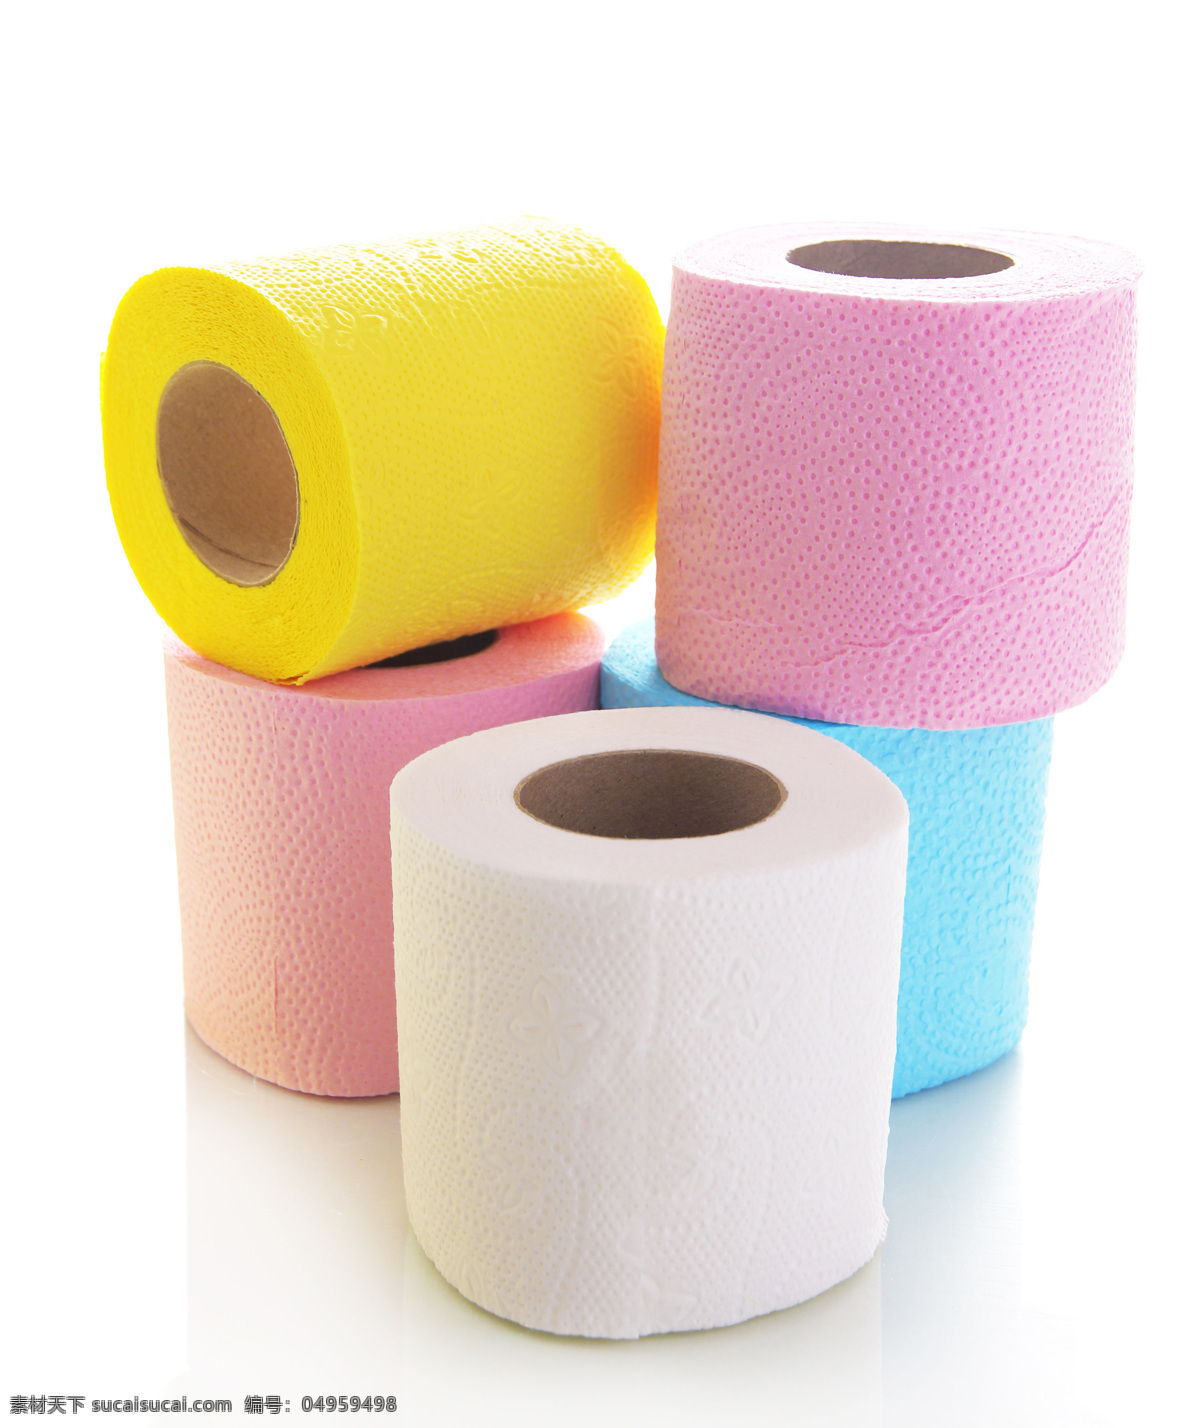 彩色 卫生纸 手纸 厕纸 生活用品 生活百科